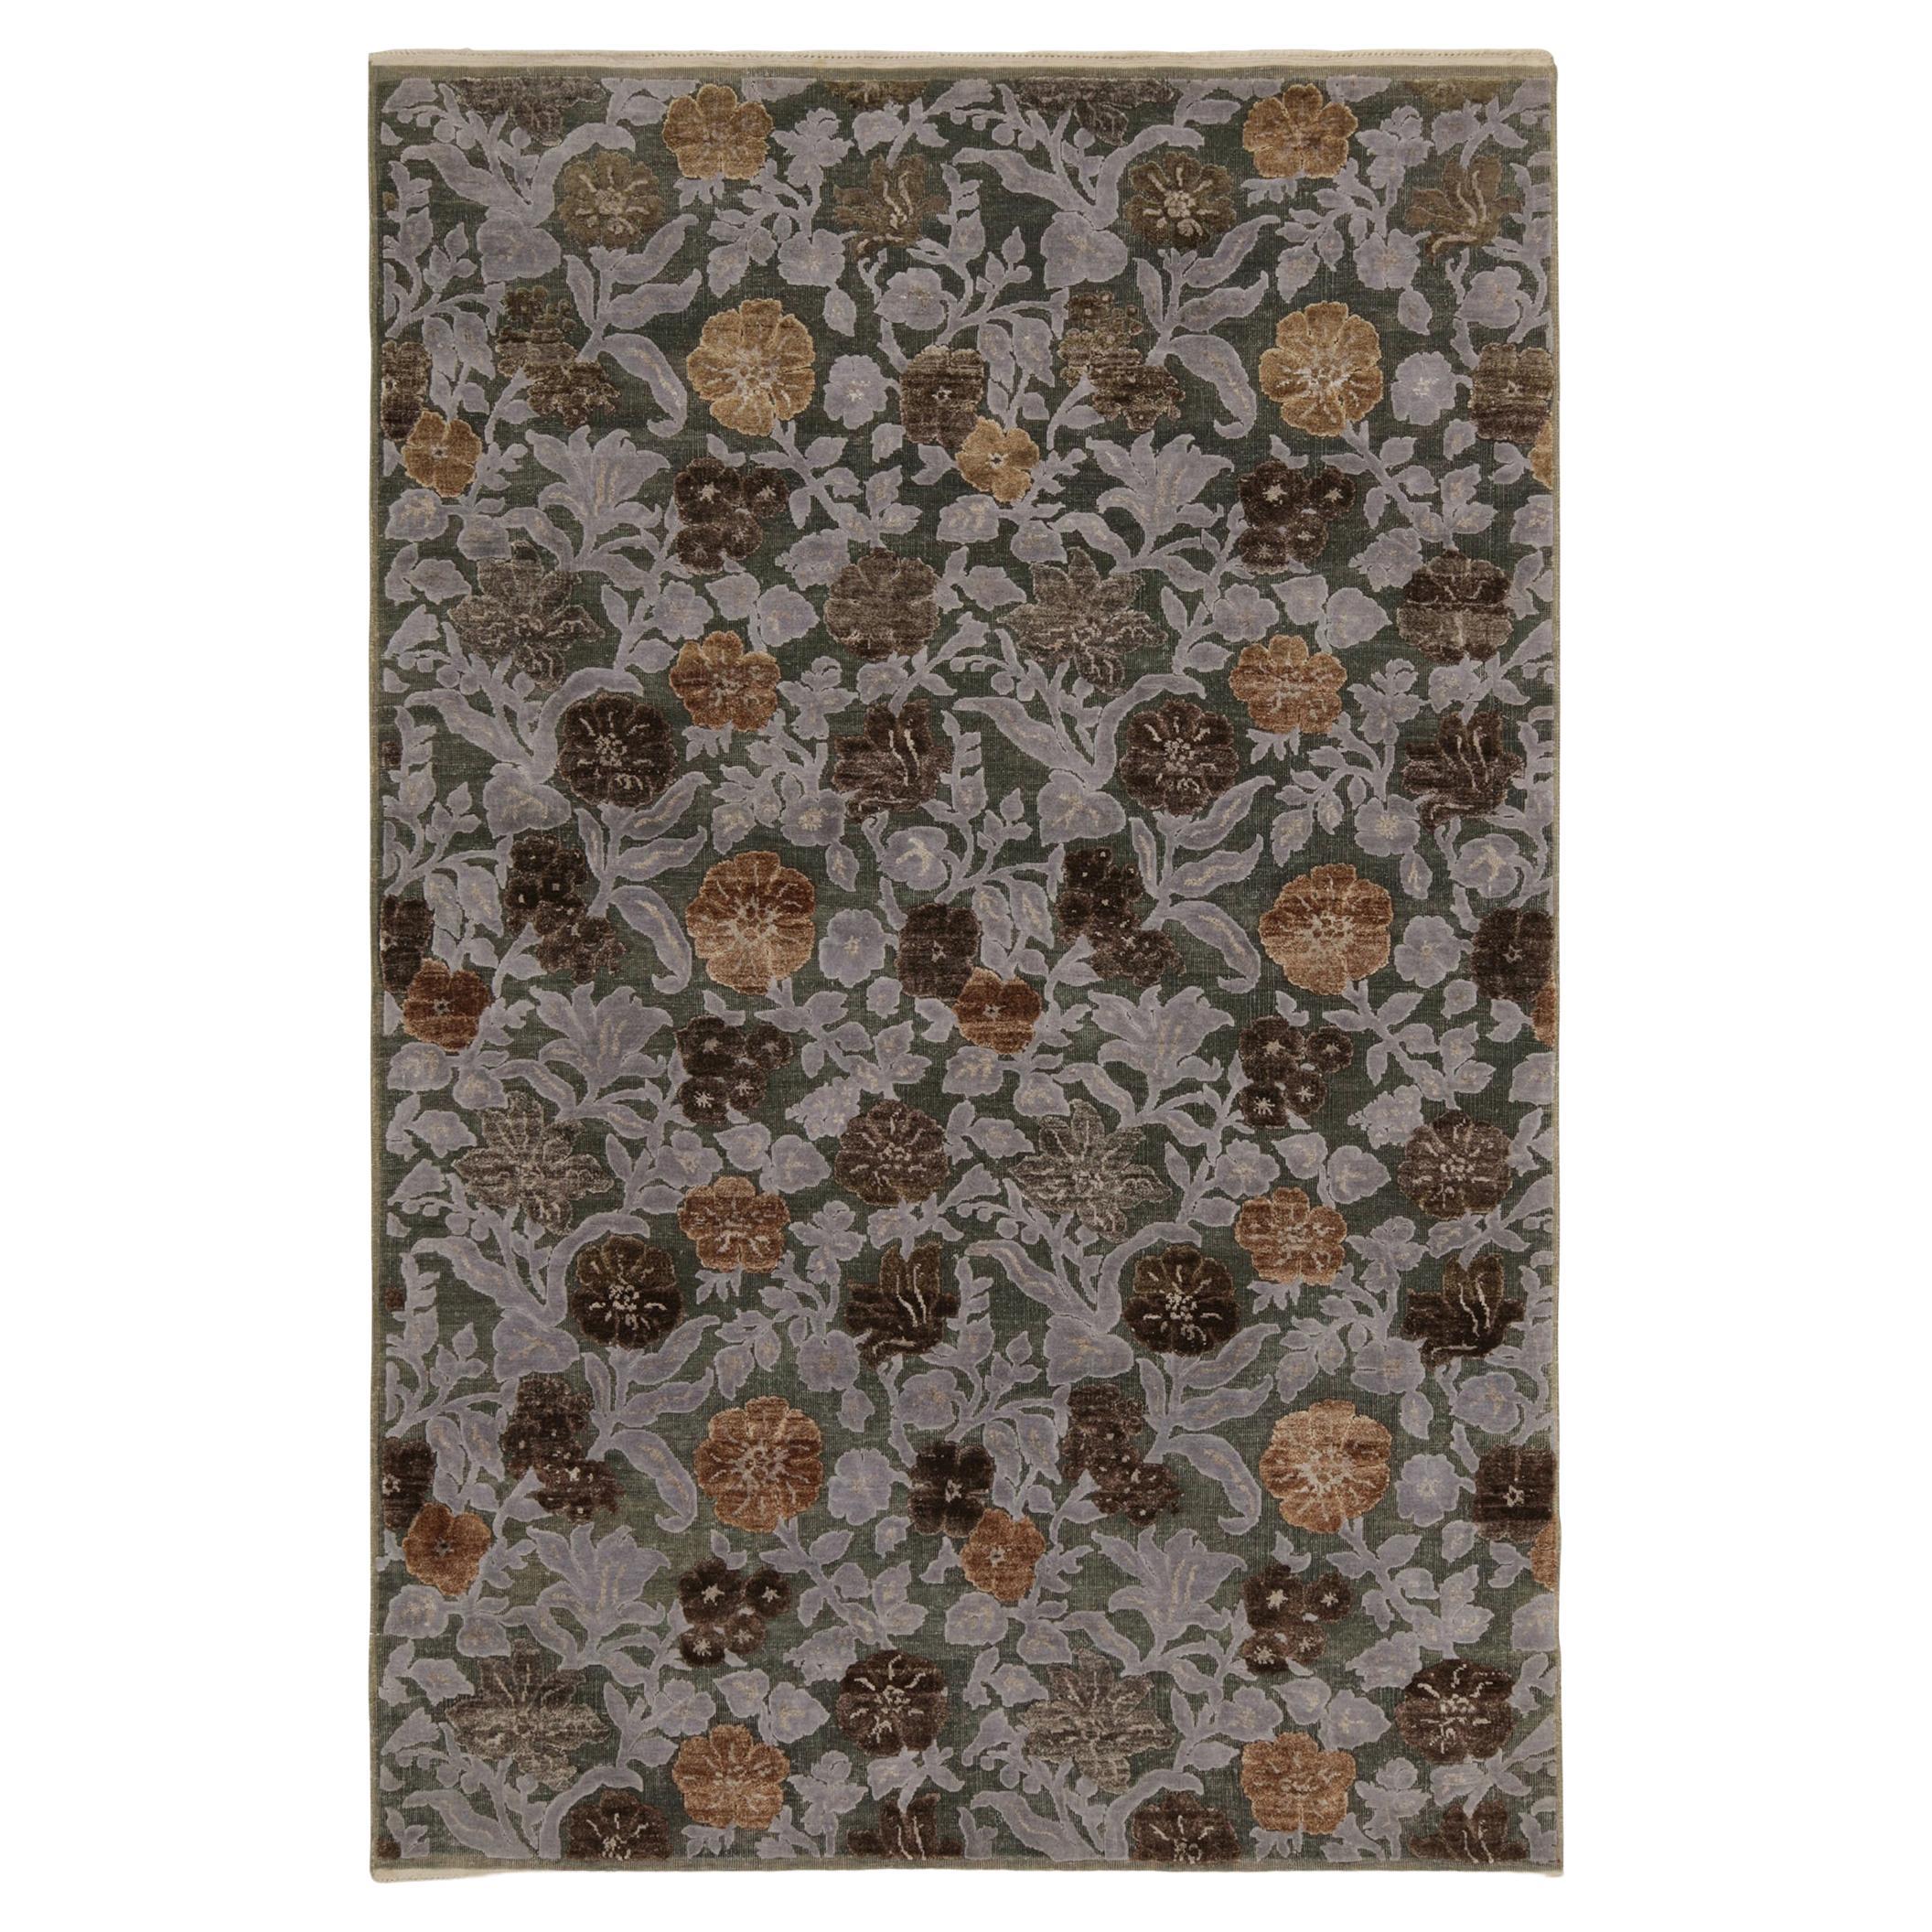 Rug & Kilim's Contemporary-Teppich in Beige-Braun und Grau-Blau mit Blumenmustern